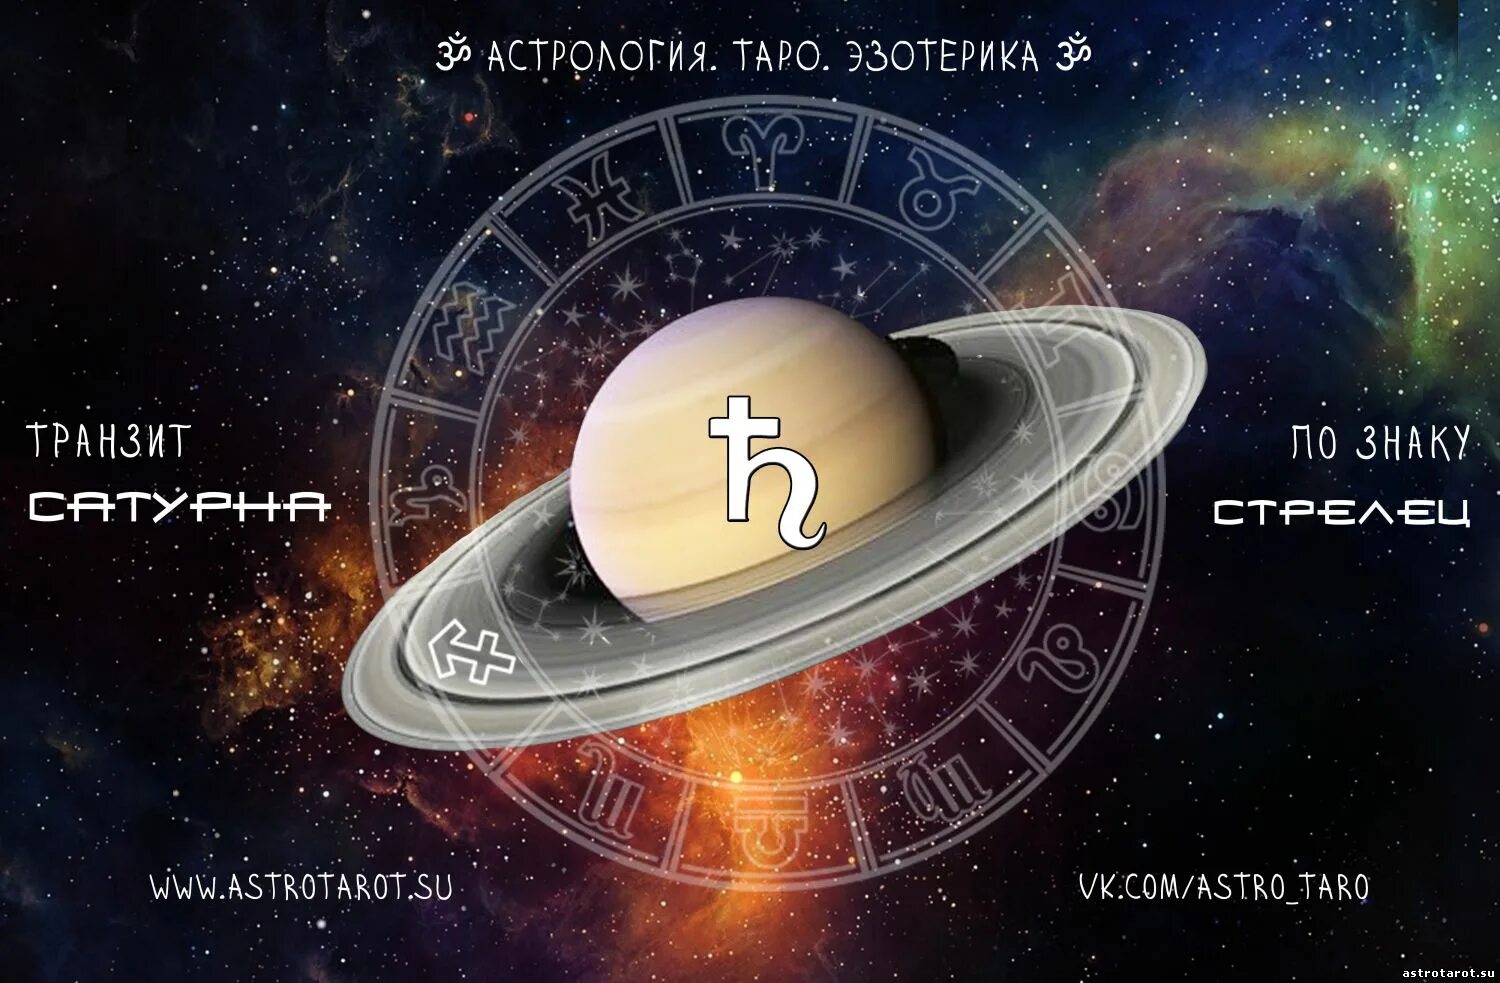 Сатурн в астрологии. Сатурн Планета в астрологии. Символ Сатурна в астрологии. Сатурн Планета астрология символы. Ретроградный знак зодиака